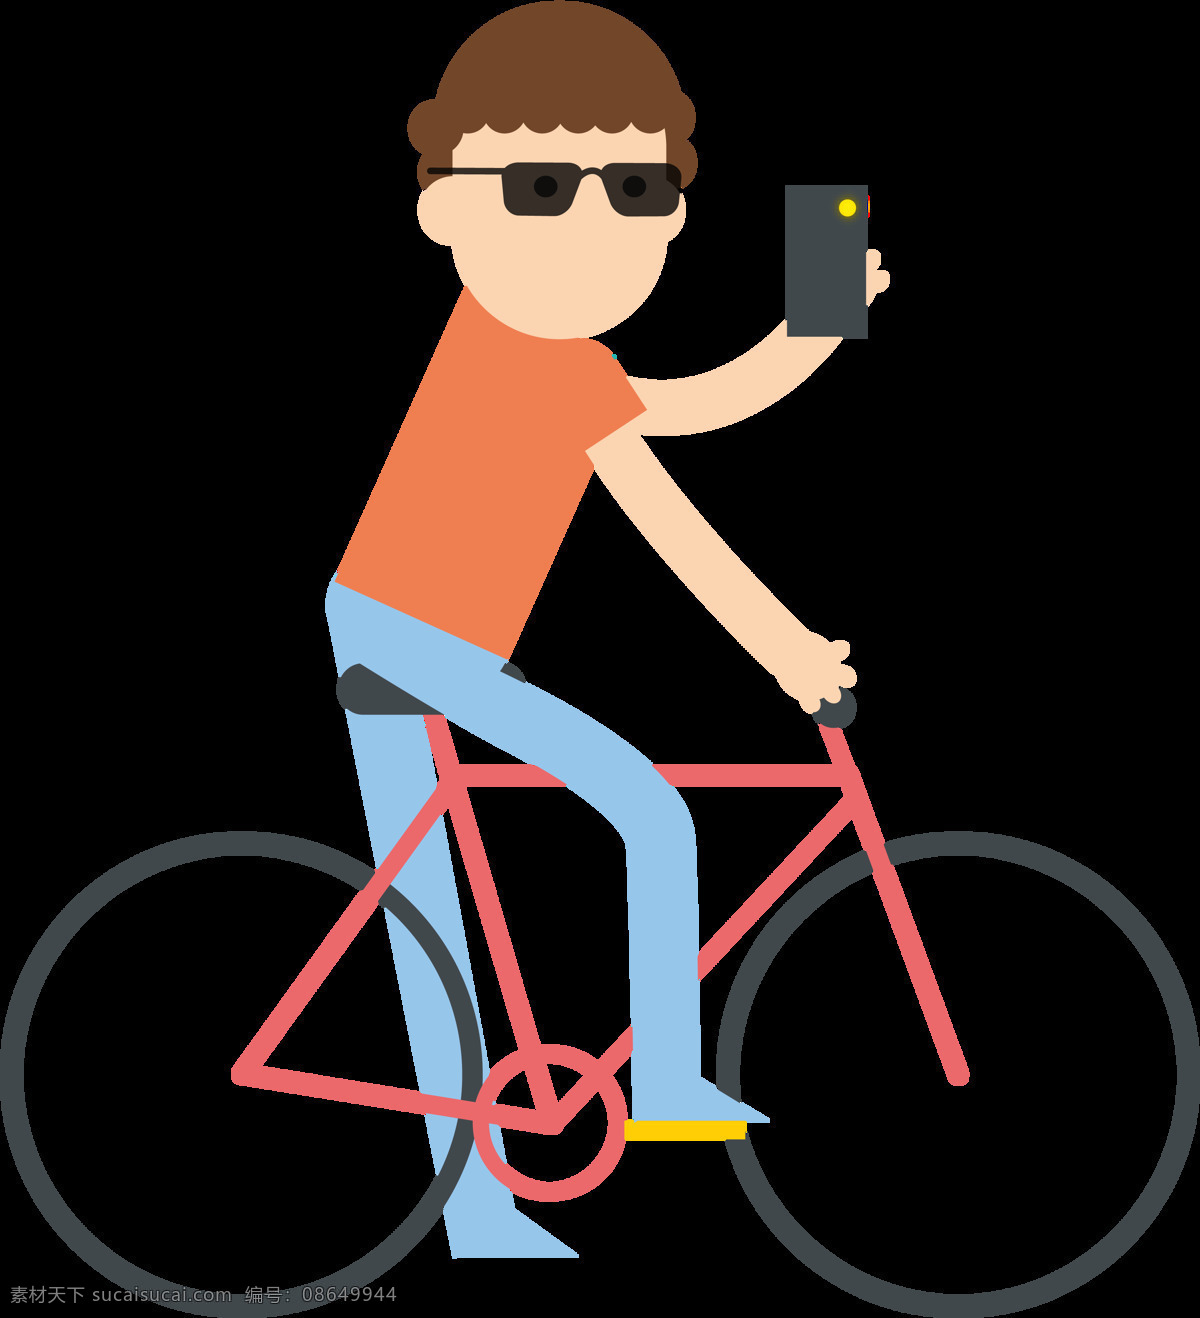 男人 骑 自行车 插画 免 抠 透明 图 层 共享单车 女式单车 男式单车 电动车 绿色低碳 绿色环保 环保电动车 健身单车 摩拜 ofo单车 小蓝单车 双人单车 多人单车